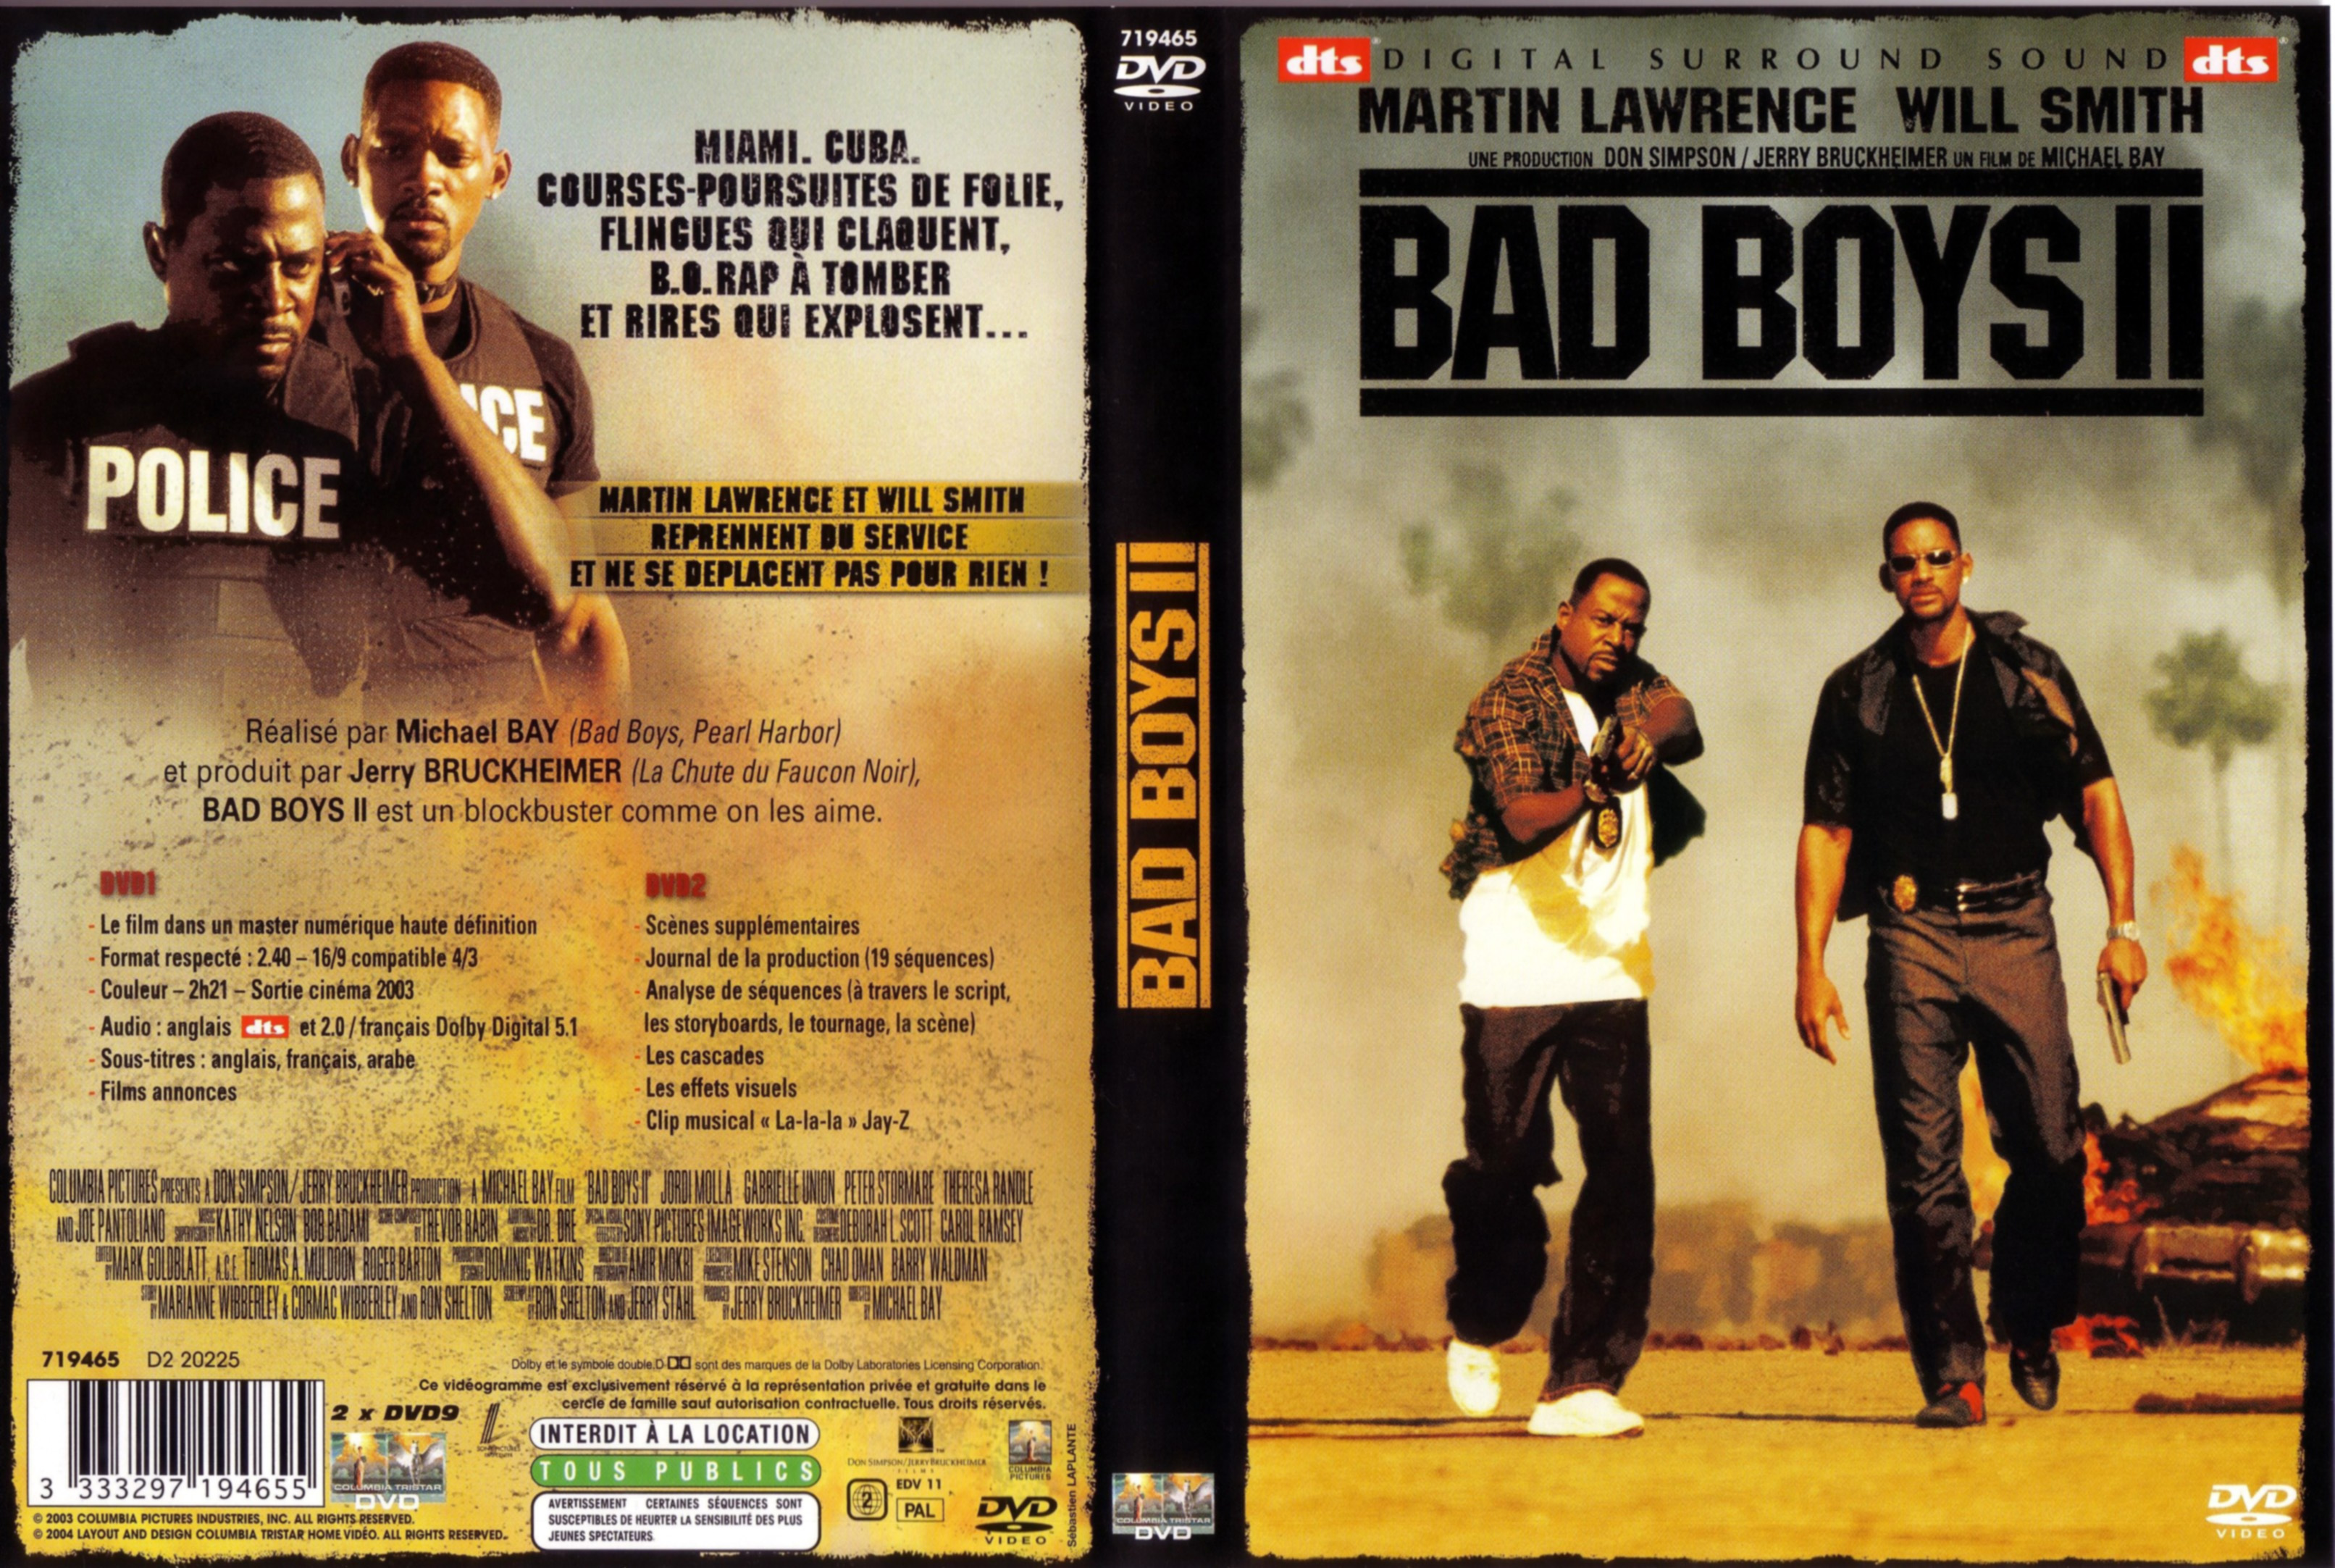 Jaquette DVD Bad boys 2 v2